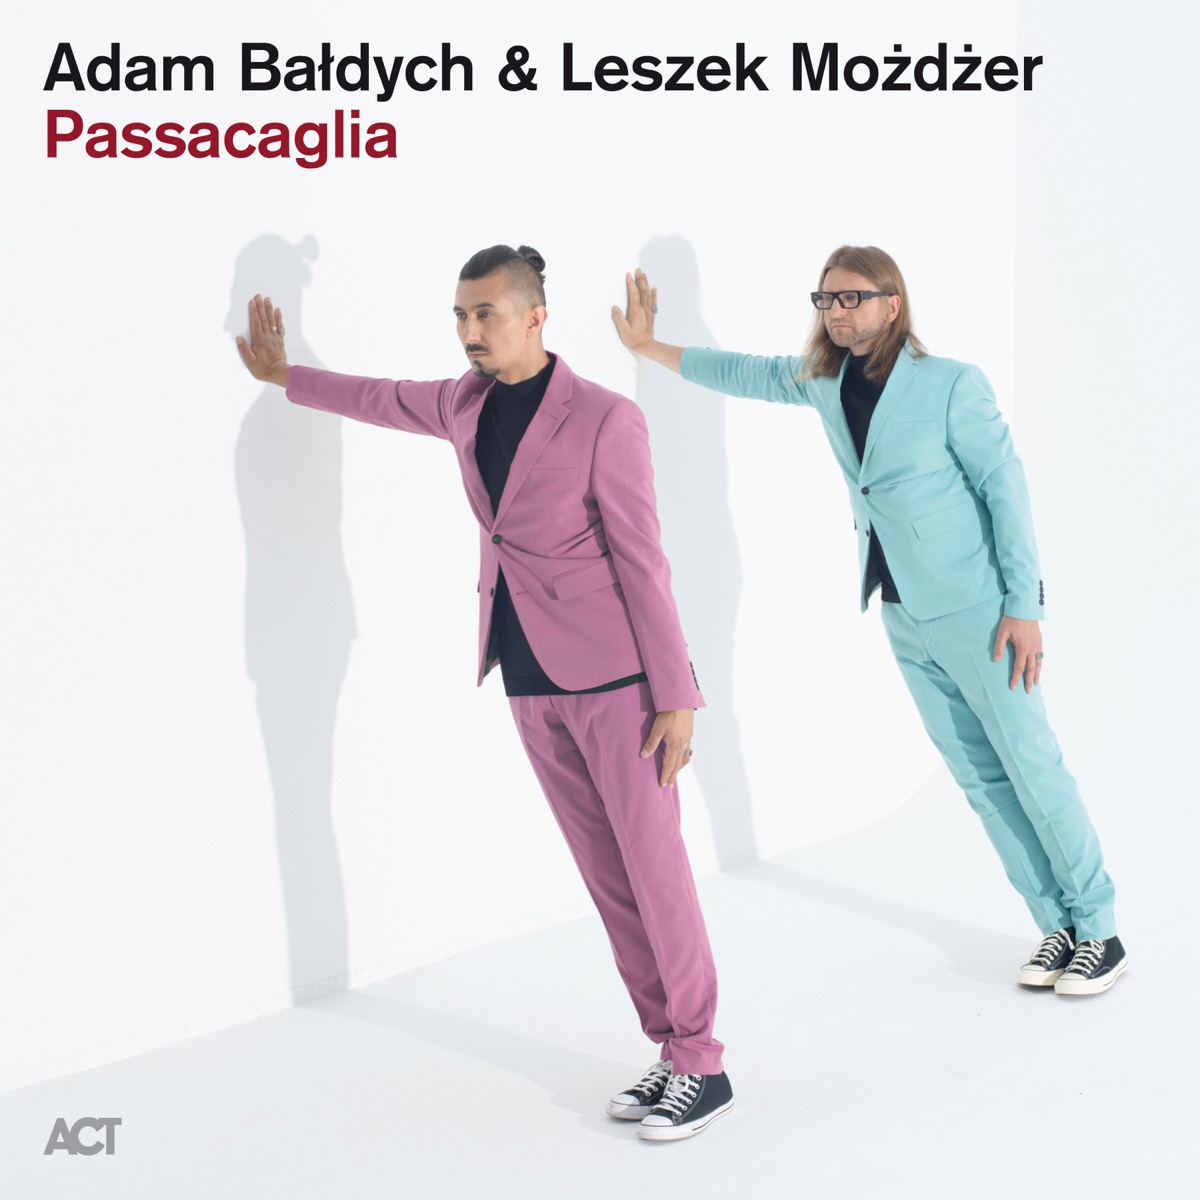 Review of Adam Bałdych and Leszek Możdżer: Passacaglia